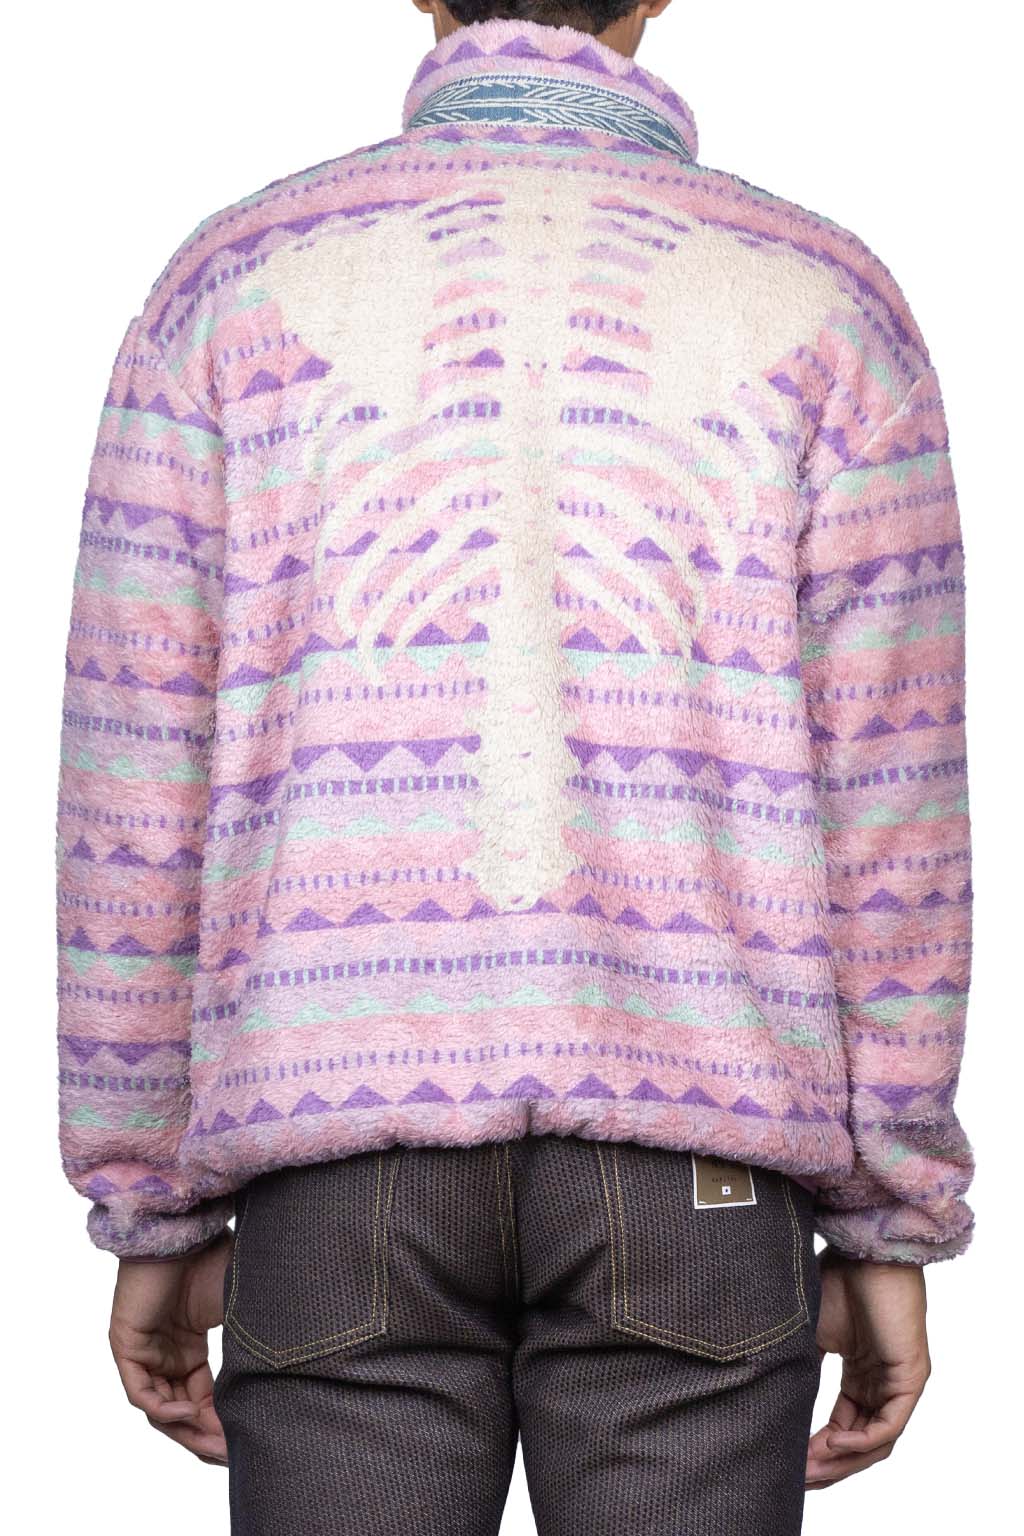 Kapital ASHLAND Stripe & BONE Fleece Zip Blouson - Pink